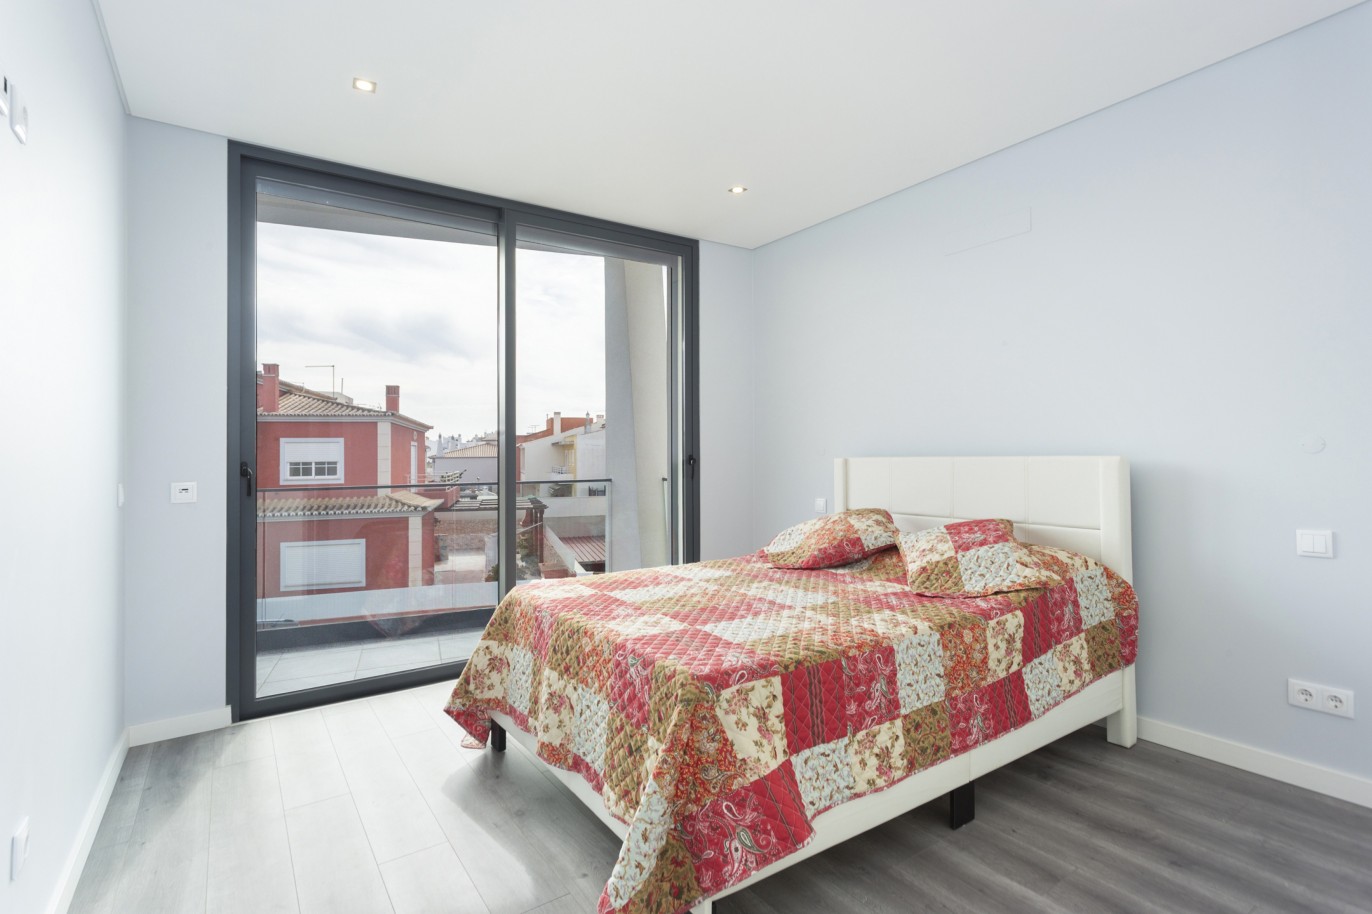 4 bedroom luxury detached villa with pool, in Bemposta, Algarve_224038